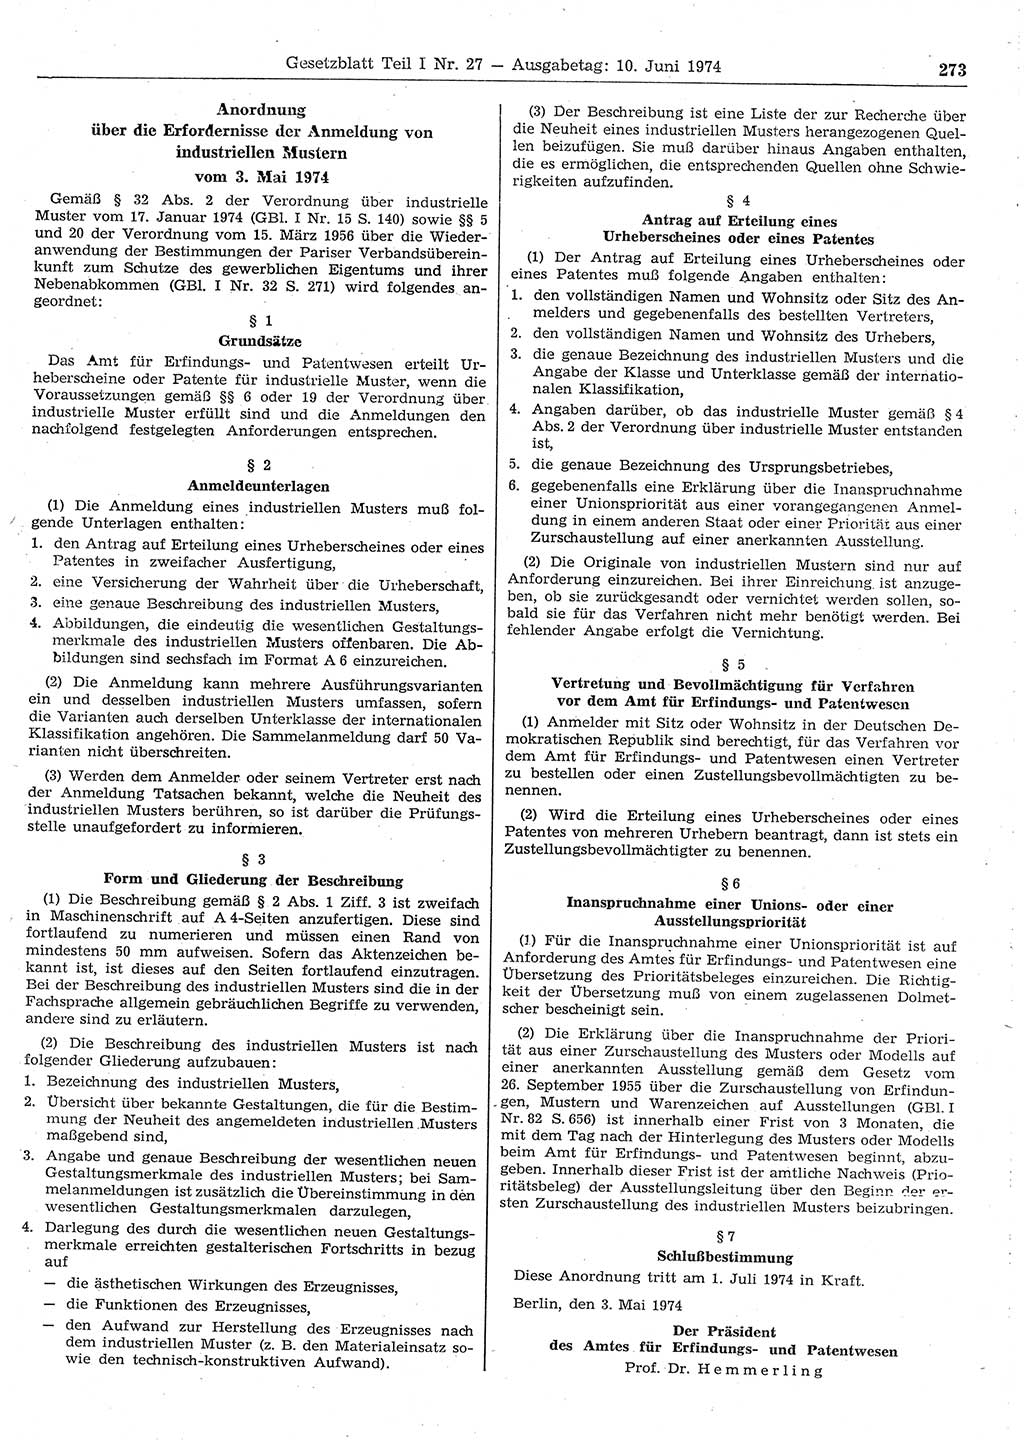 Gesetzblatt (GBl.) der Deutschen Demokratischen Republik (DDR) Teil Ⅰ 1974, Seite 273 (GBl. DDR Ⅰ 1974, S. 273)